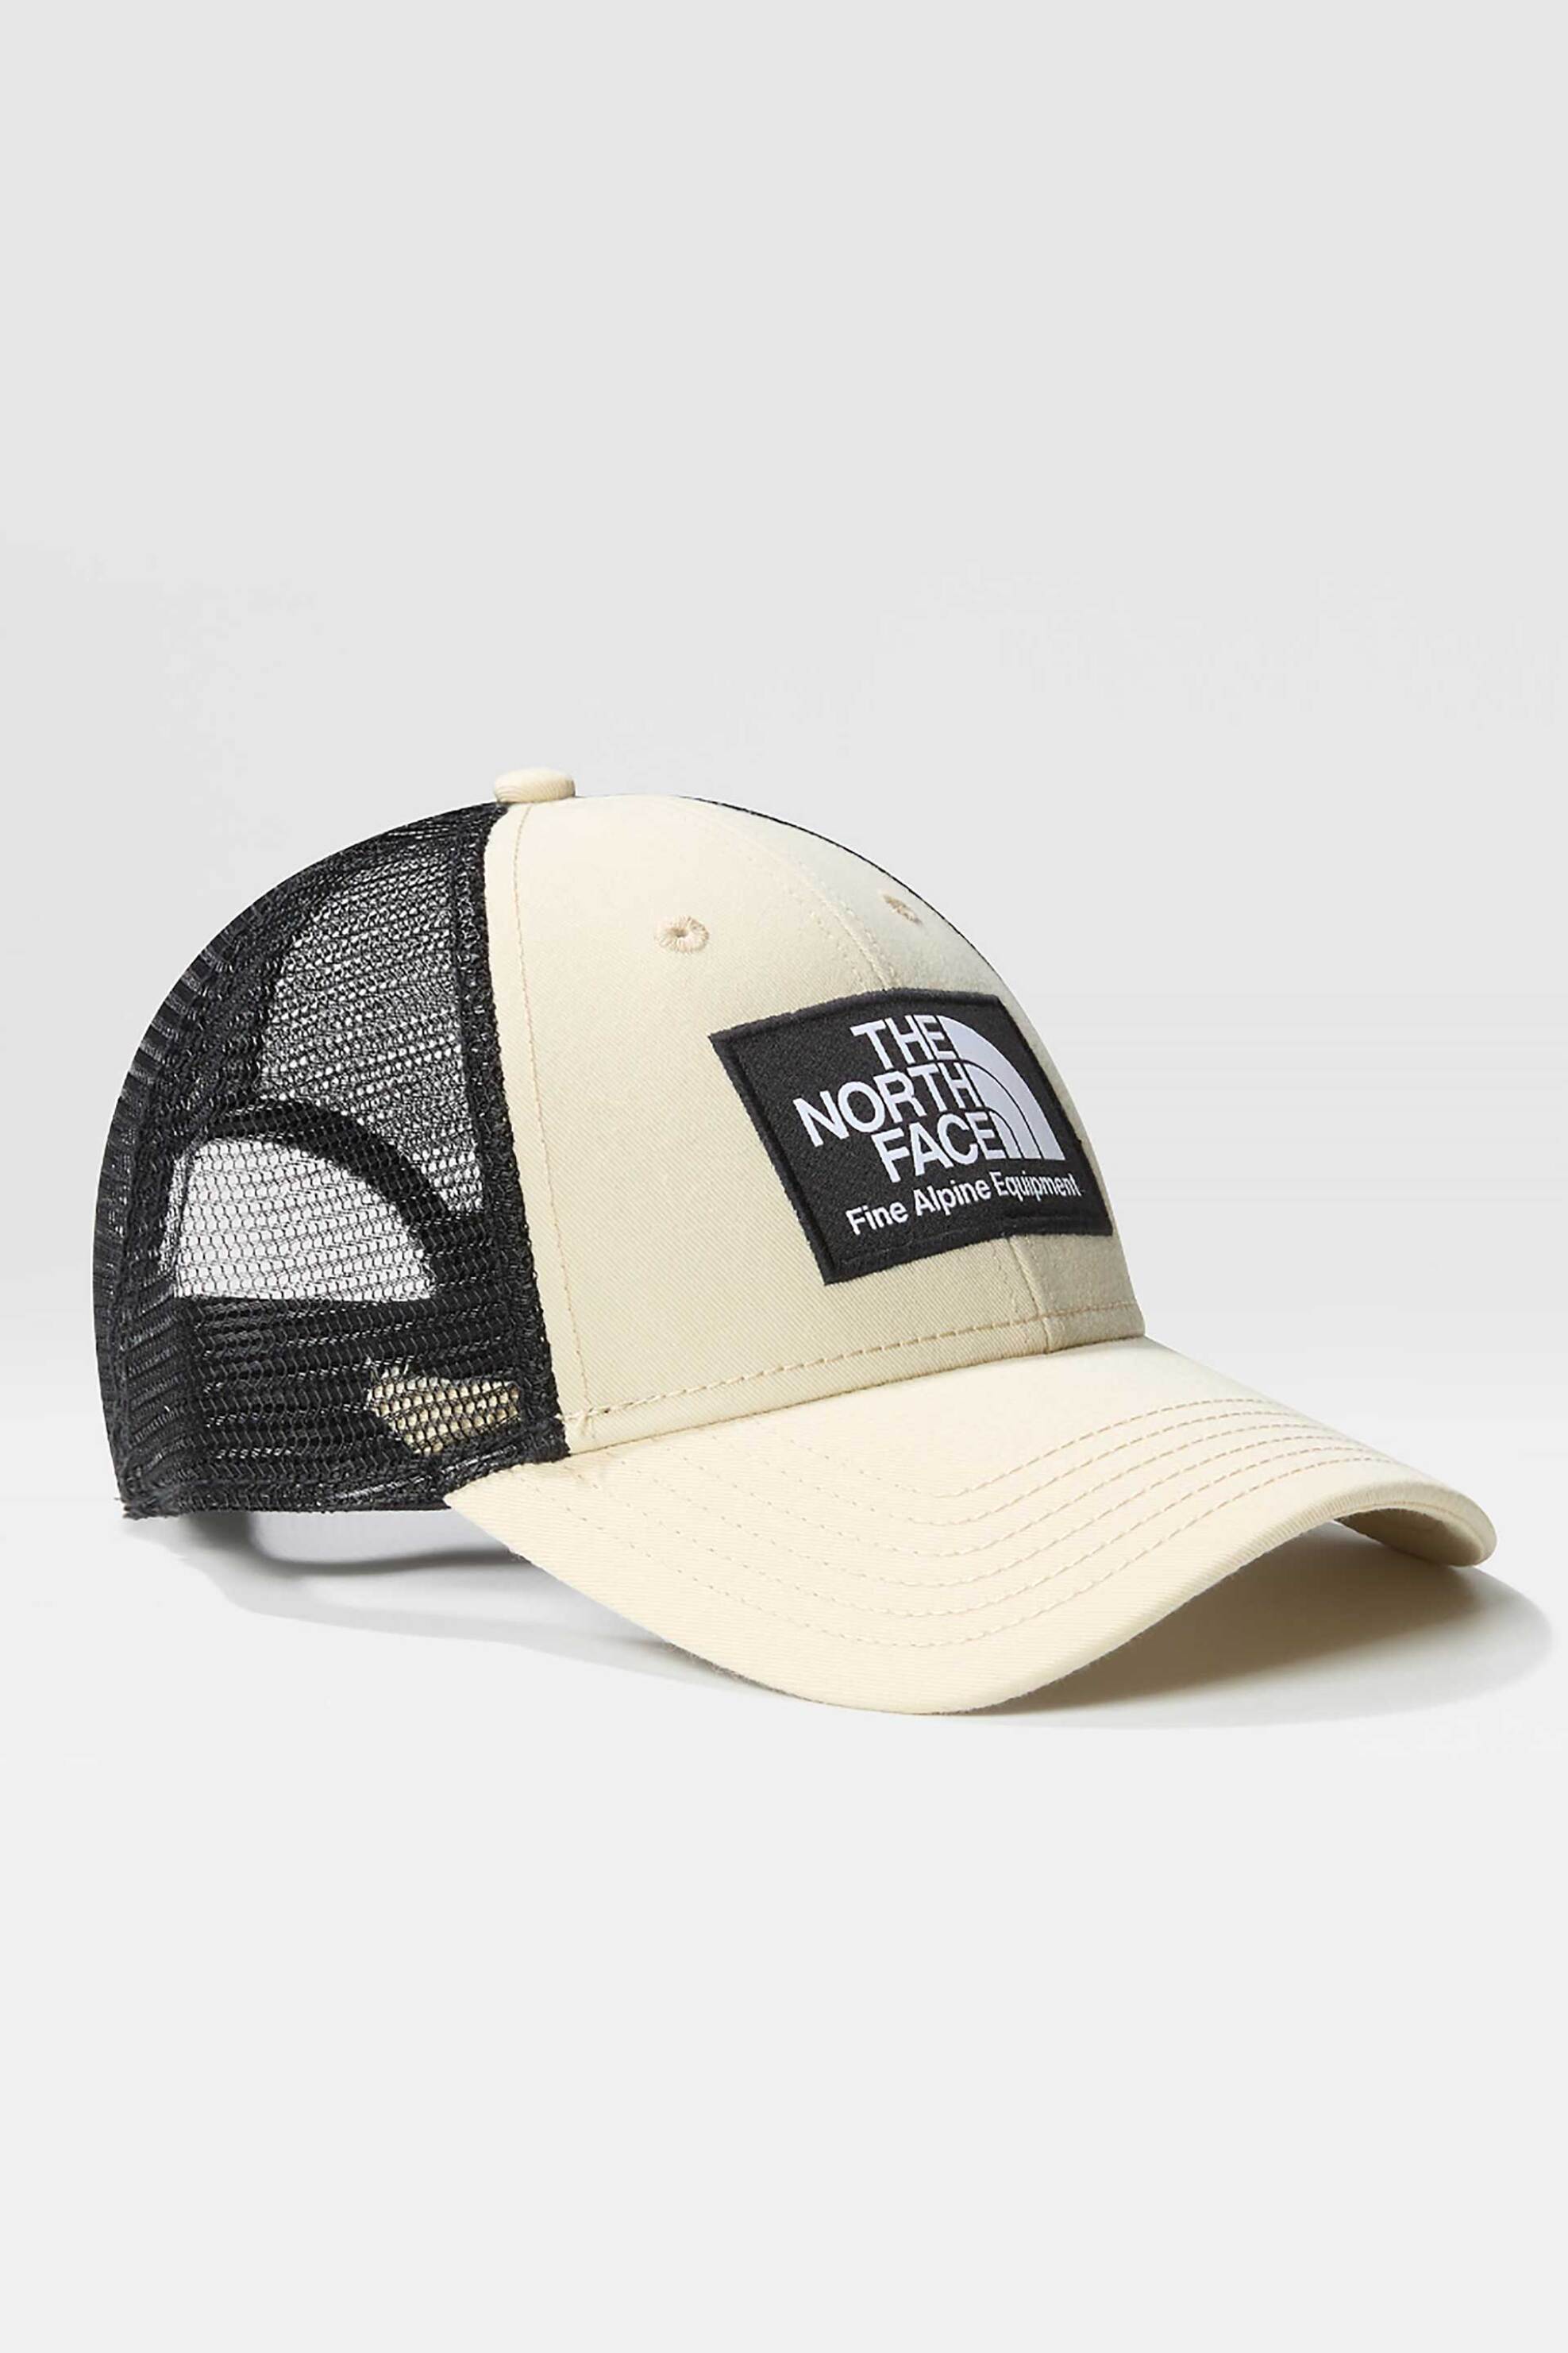 Ανδρική Μόδα > Ανδρικά Αξεσουάρ > Ανδρικά Καπέλα & Σκούφοι The North Face unisex καπέλο με logo patch και snapback "Mudder Trucker Cap" - NF0A5FXA3X41 Κρέμ